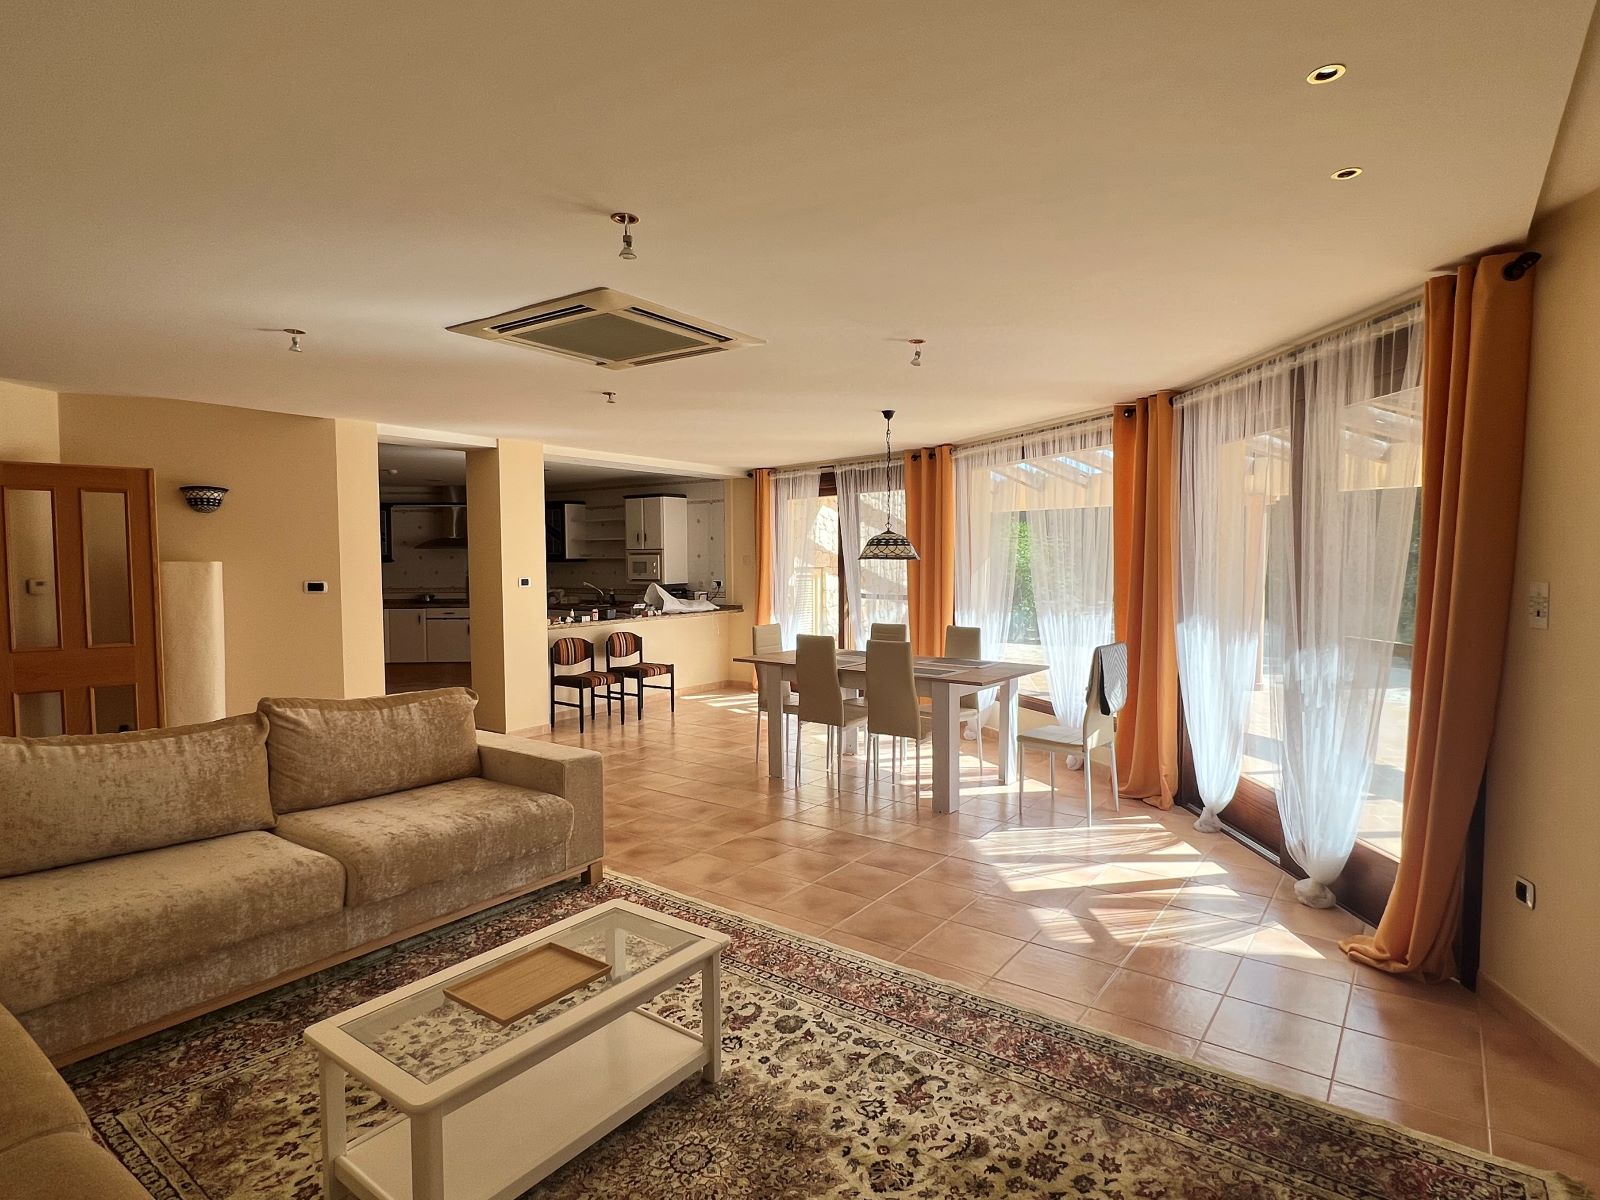 Uniek en exclusief luxe herenhuis, op drie verdiepingen, te koop in het gebied van Calpe-Benissa